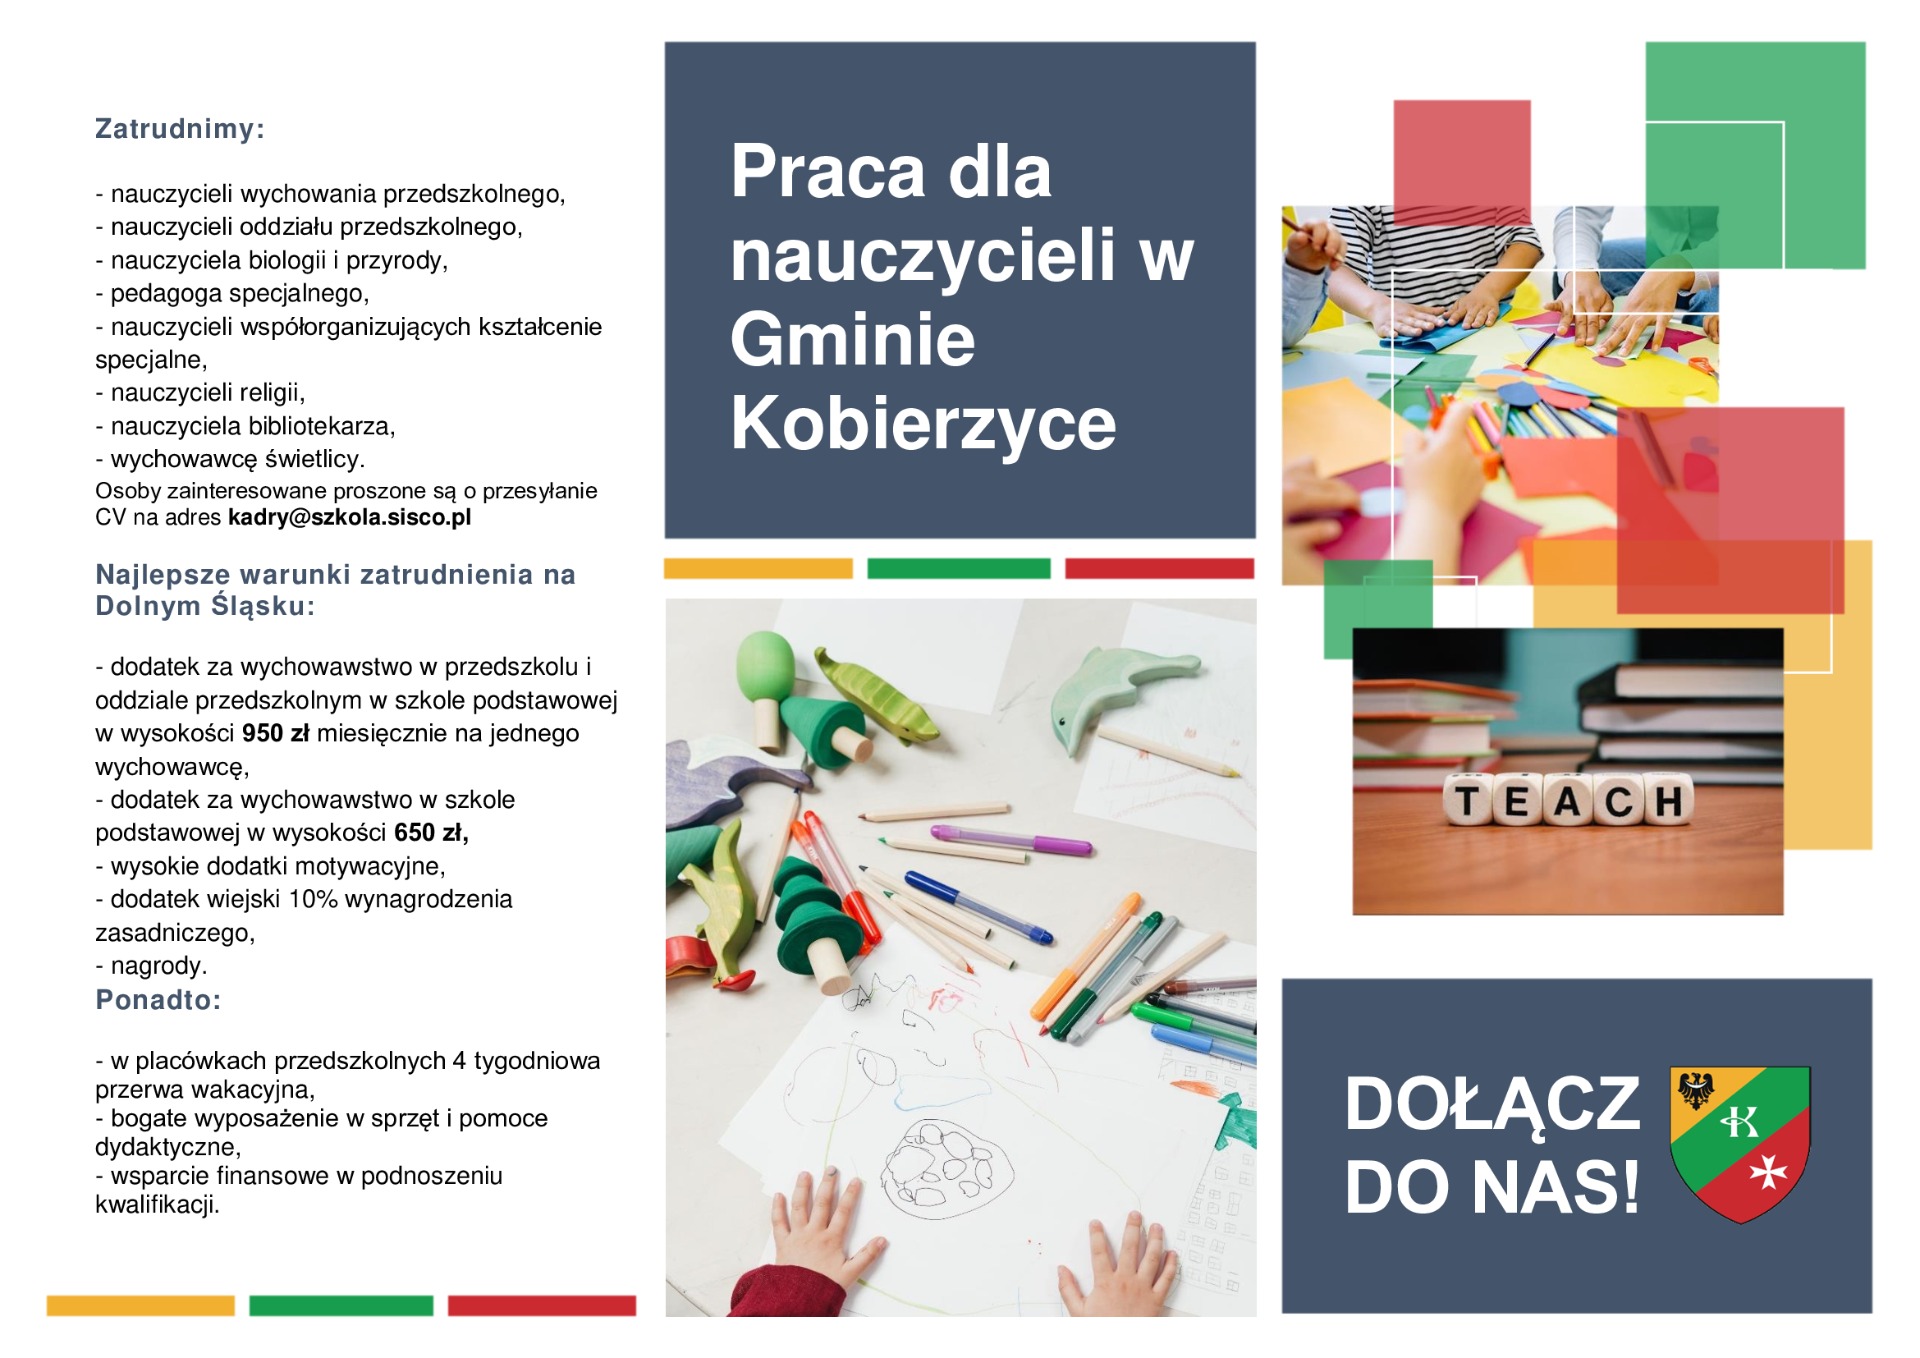 Praca dla nauczycieli w Gminie Kobierzyce - Obrazek 1